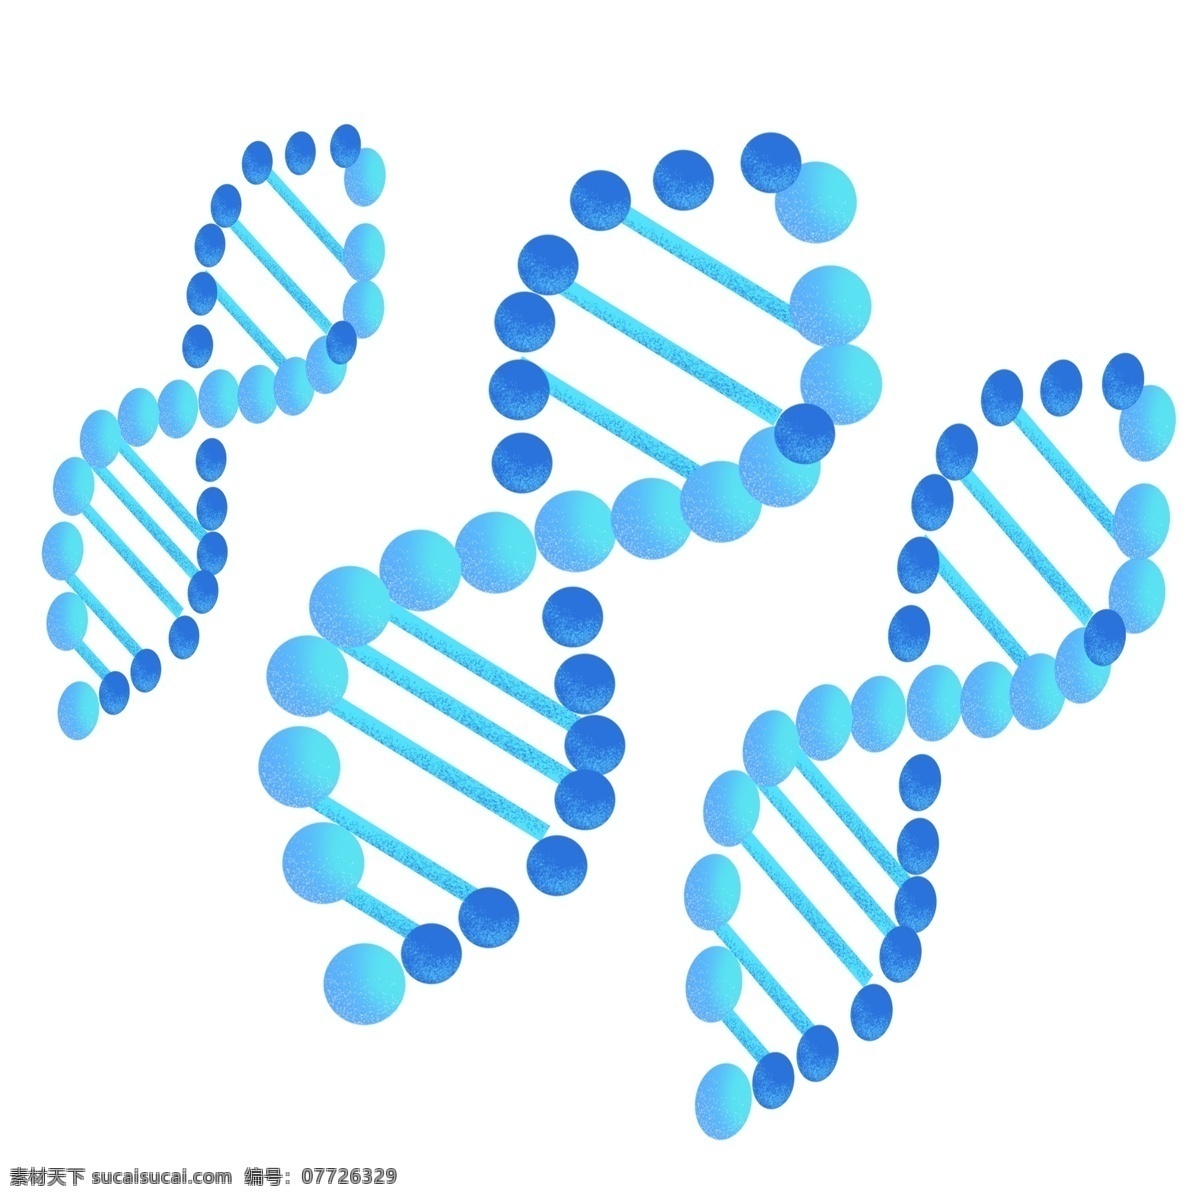 分子生物学 遗传 因子 化学教科书 教学装饰插画 遗传因子插画 蓝色的插画 小清新插画 双螺旋结构